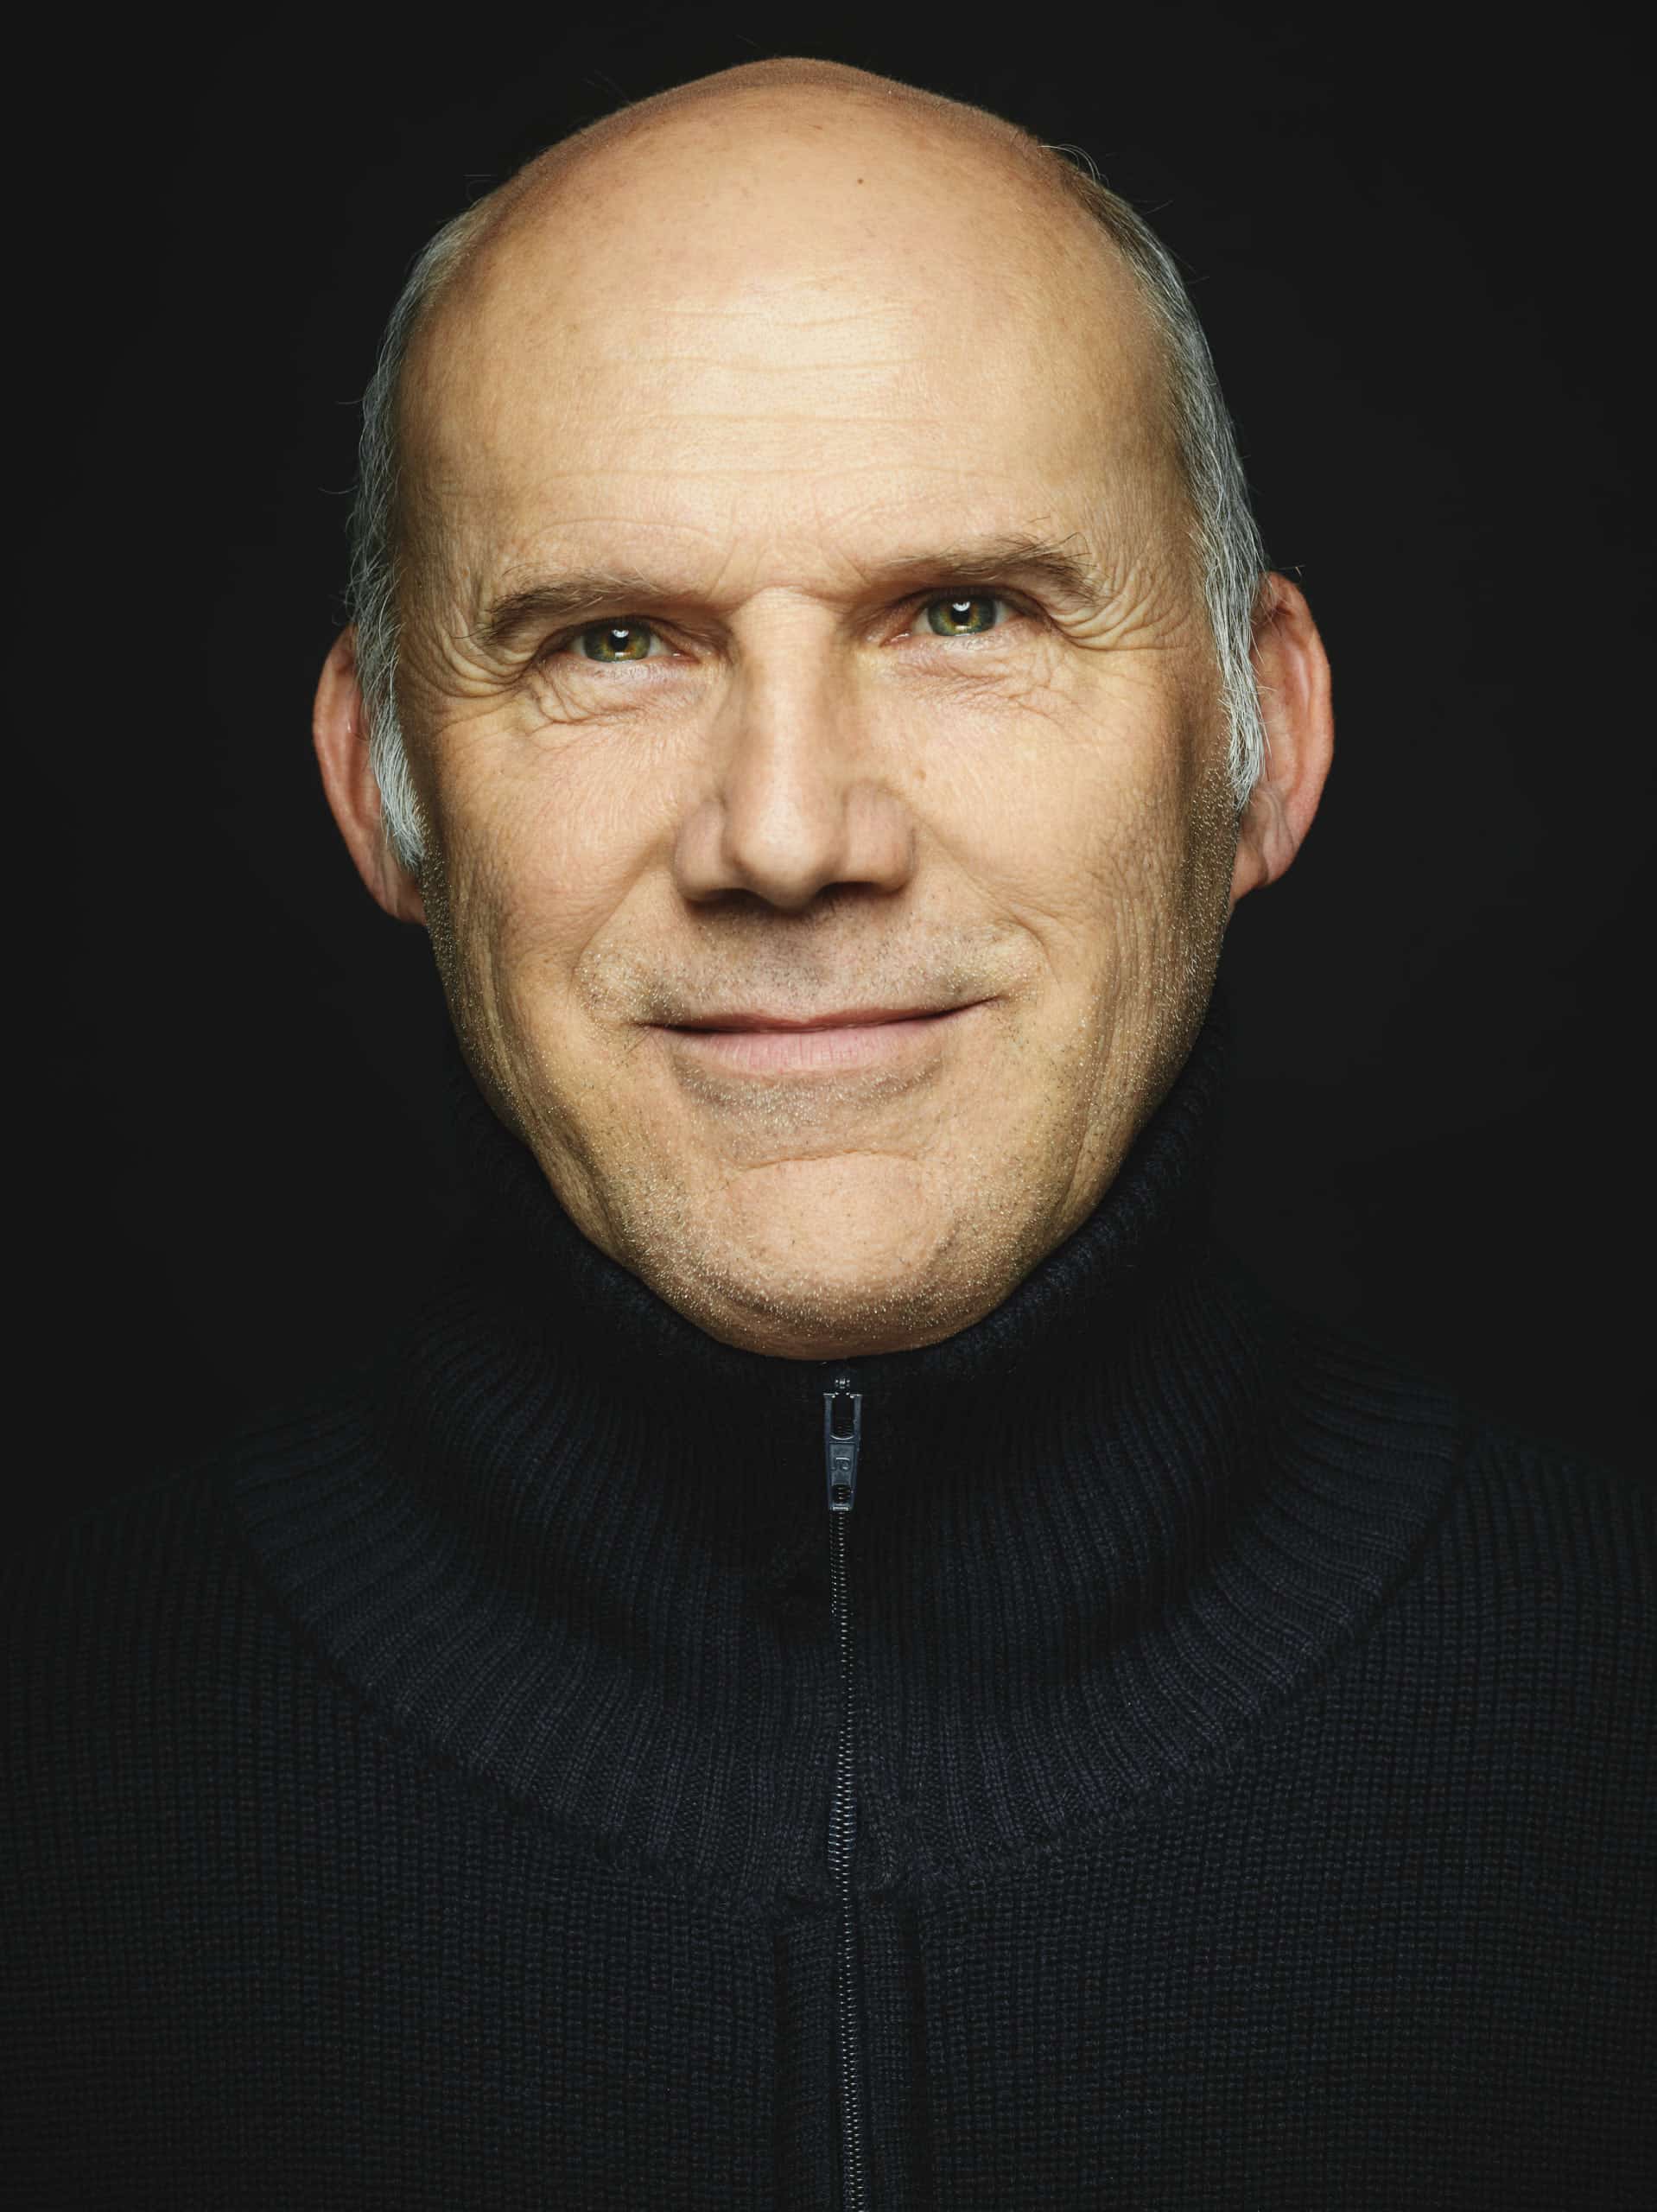 Closeup Portrait mit dem Winzer Andreas Dilger im Studio mit schwarzen Hintergrund. Geschossen mit einer Phase One im Mittelformat.